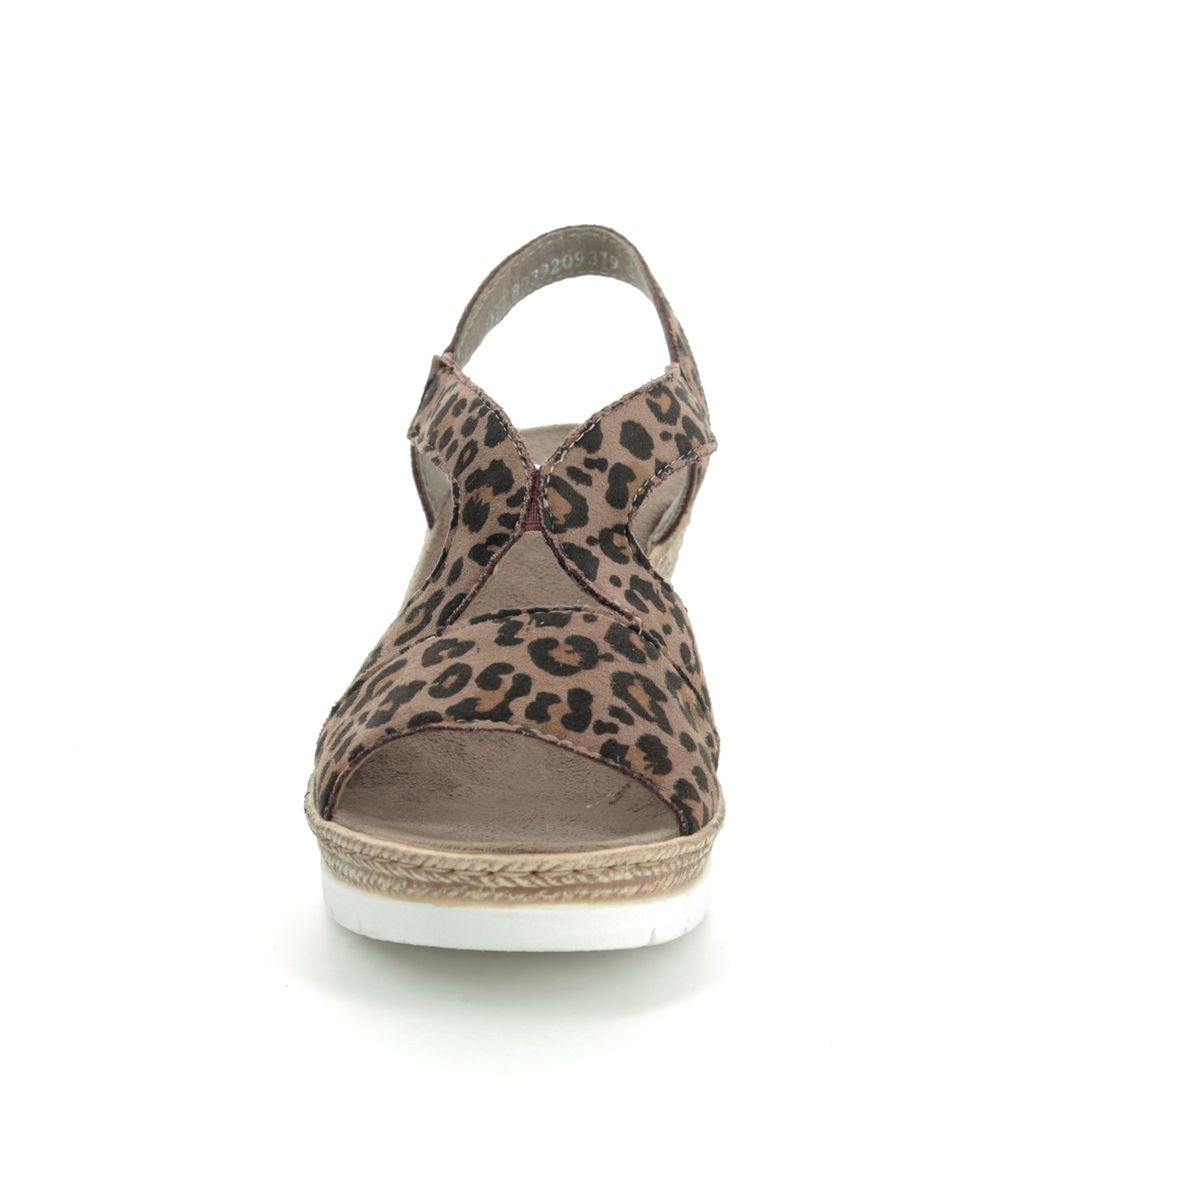 rieker sandal leopard